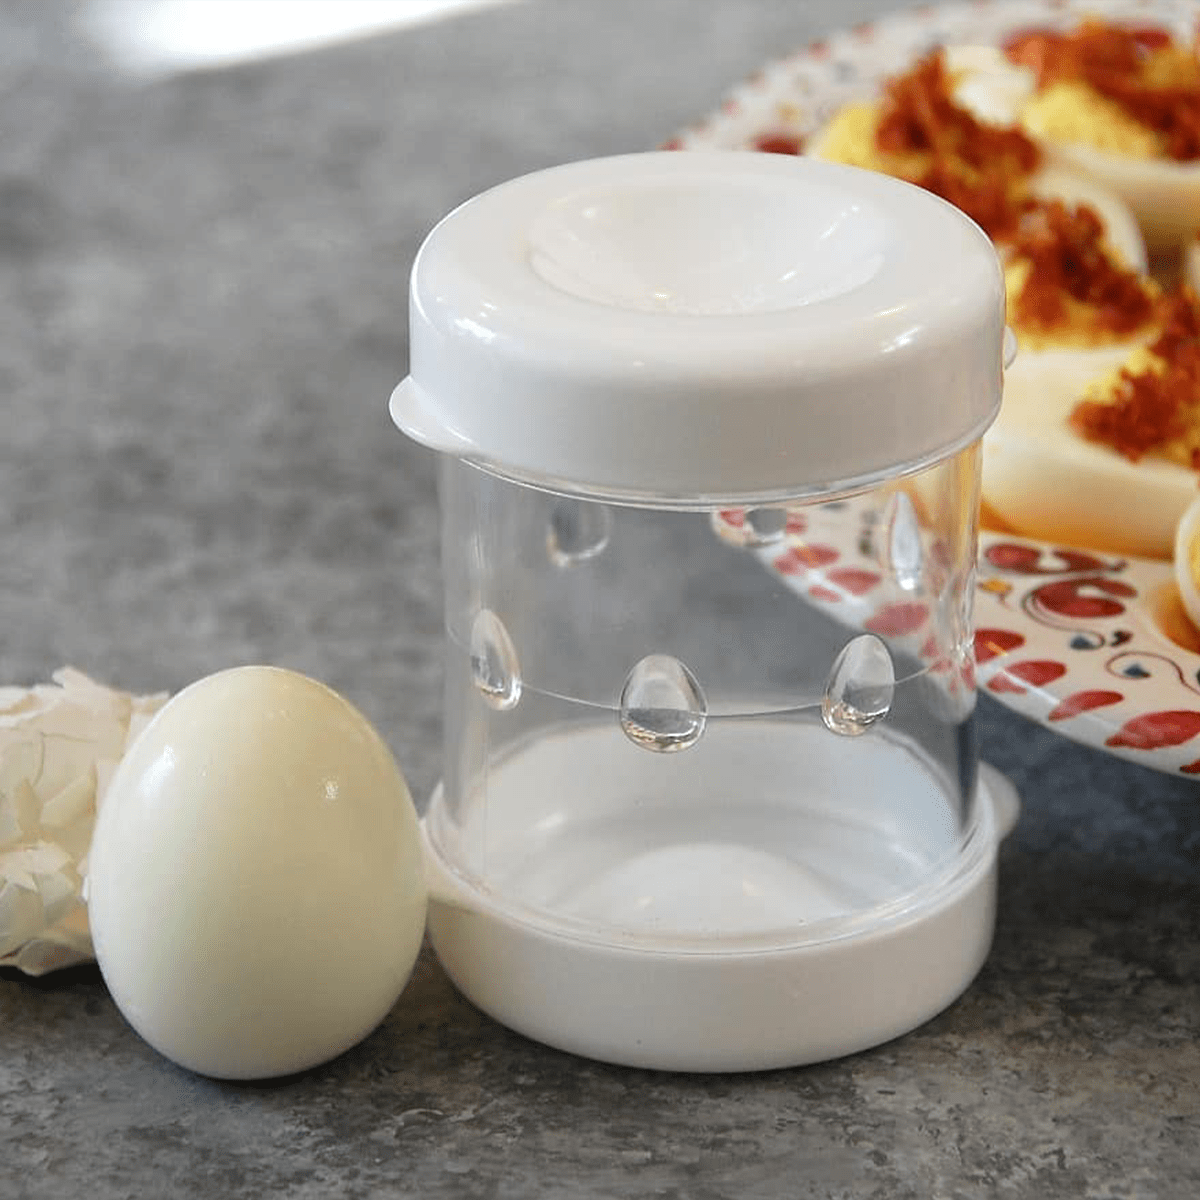 The Negg Boiled Egg Peeler - Cutler's